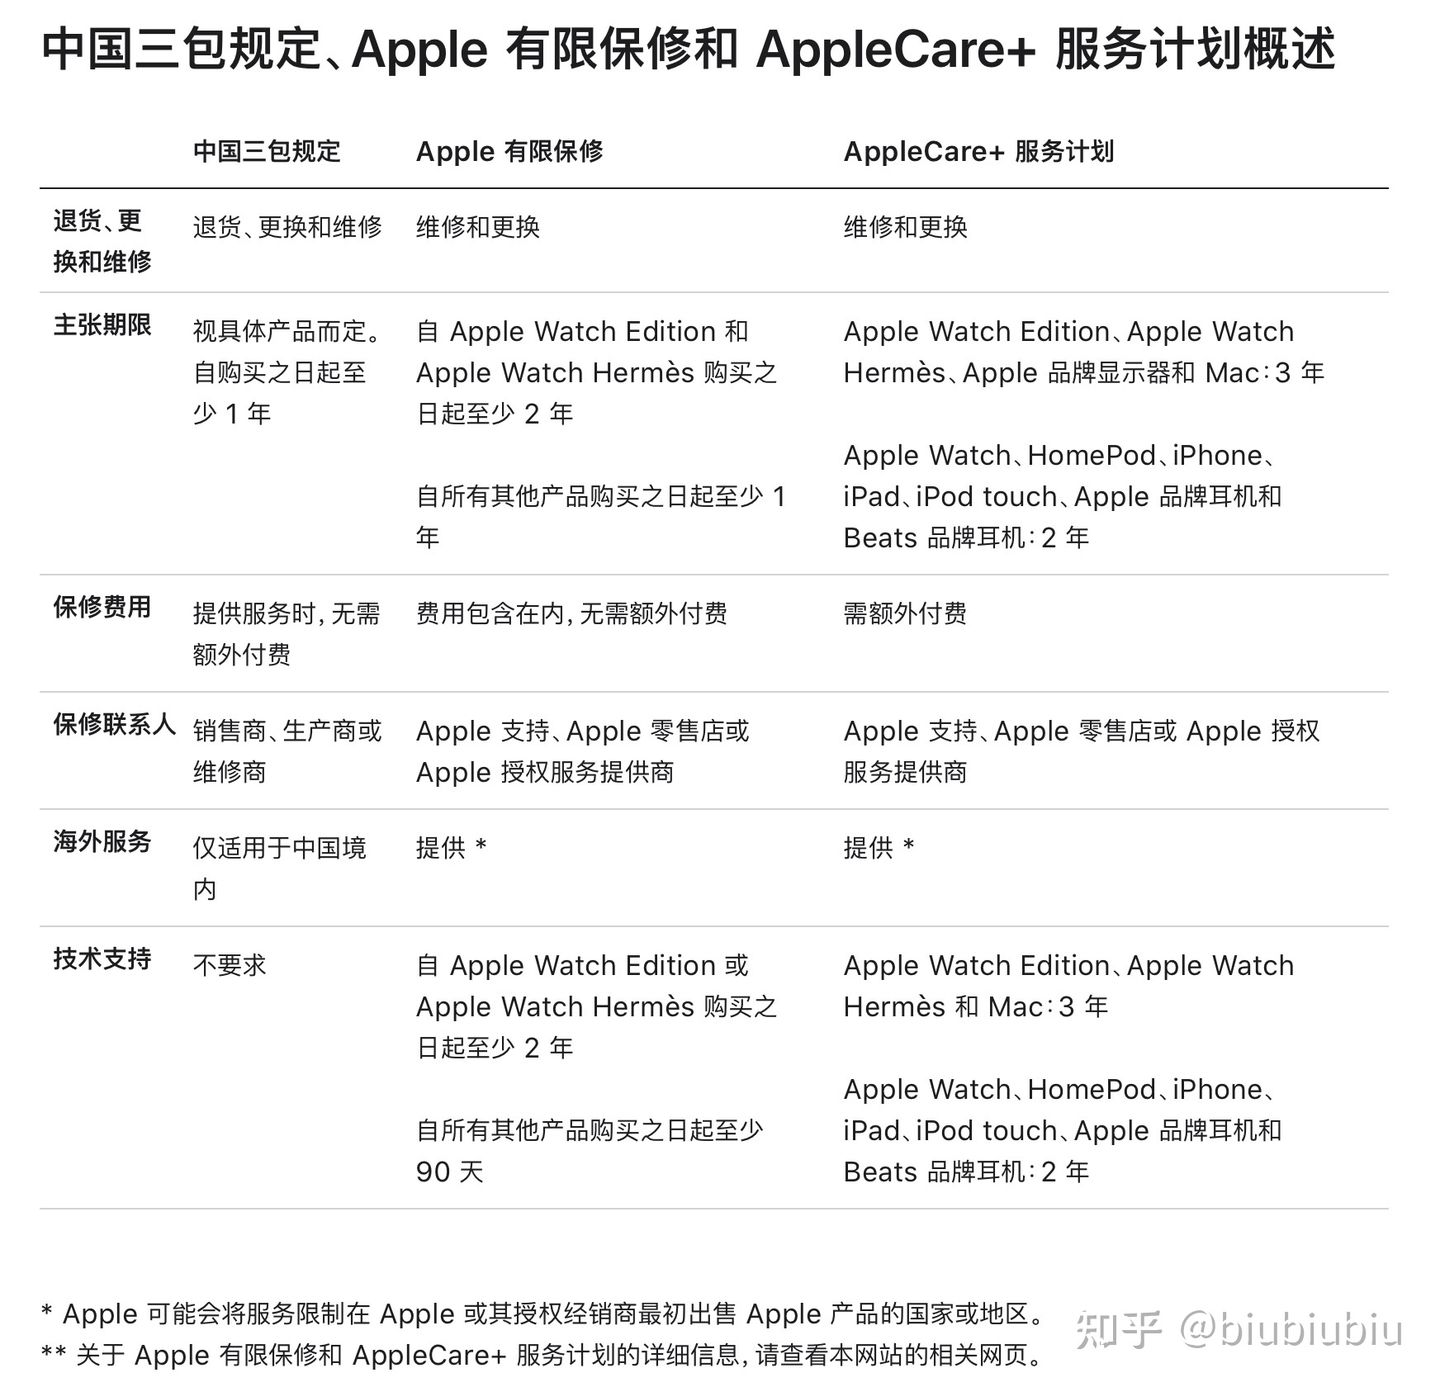 美版ipad air4没有发票但是买了ac+，… - Apple 社区